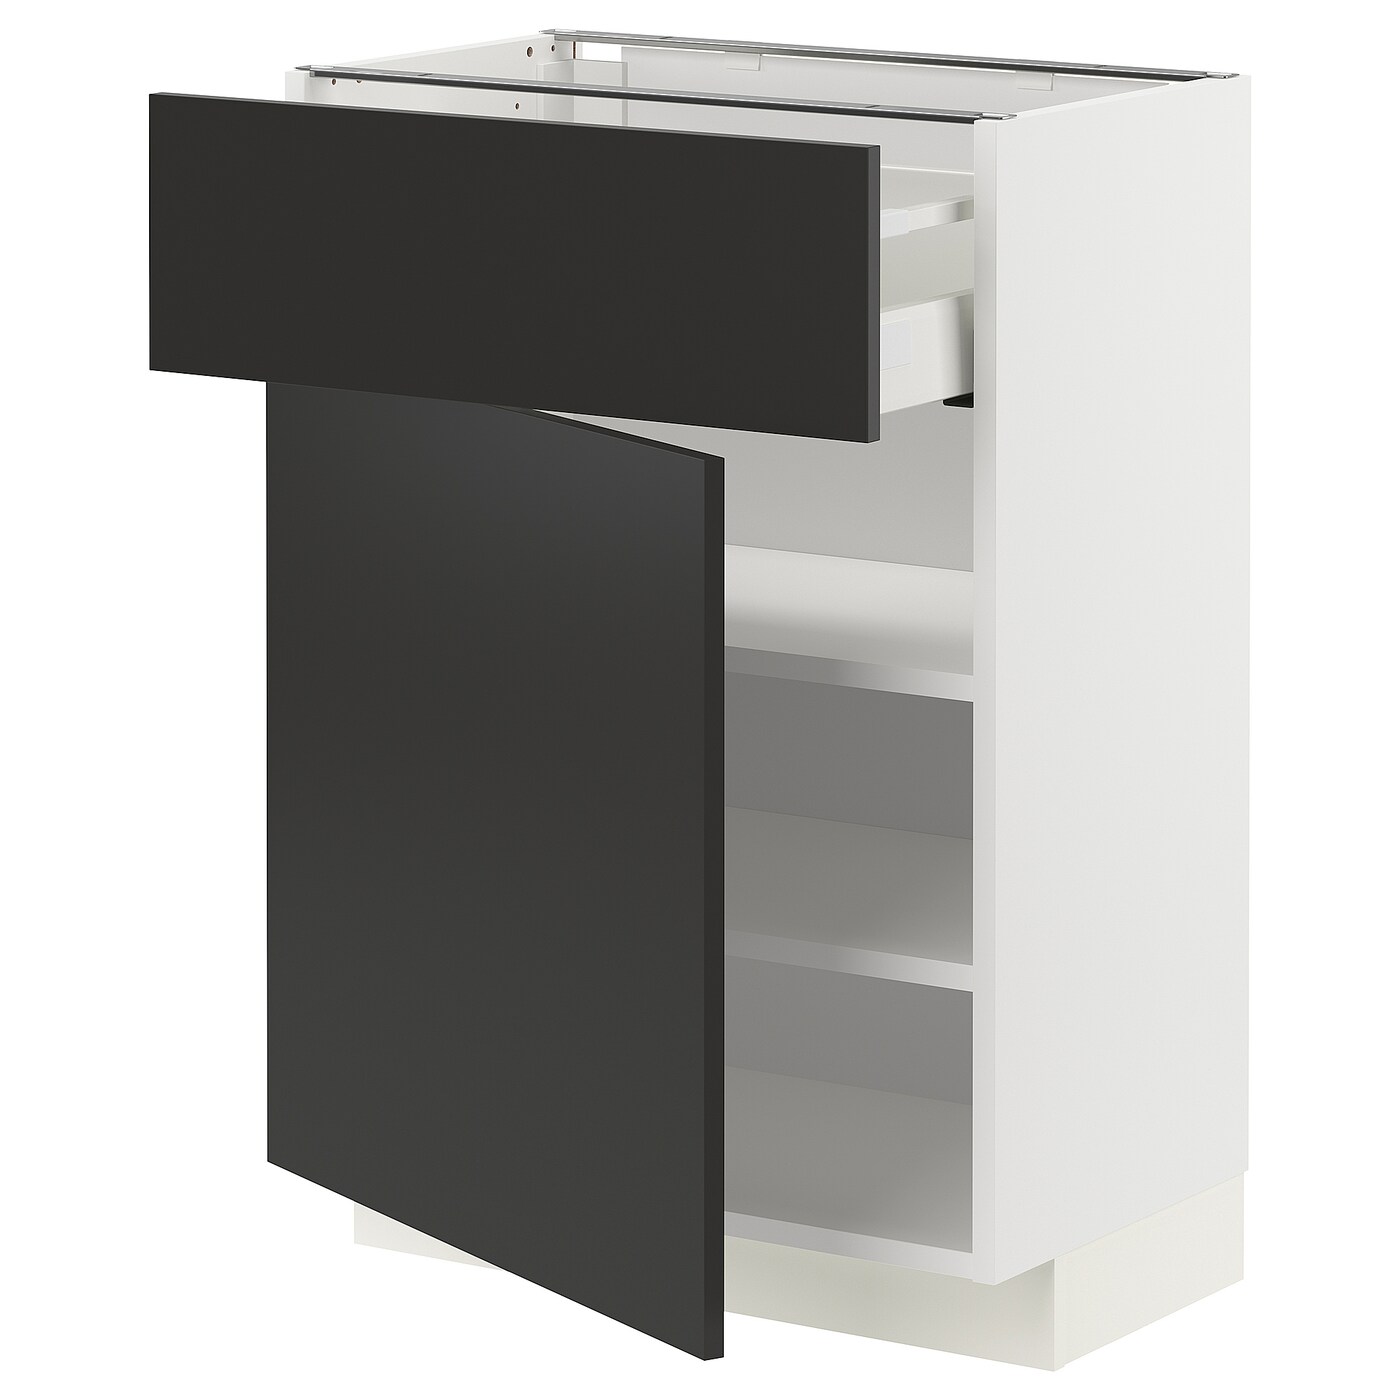 Напольный шкаф - METOD / MAXIMERA IKEA/ МЕТОД/ МАКСИМЕРА ИКЕА,  60х88 см, белый/черный